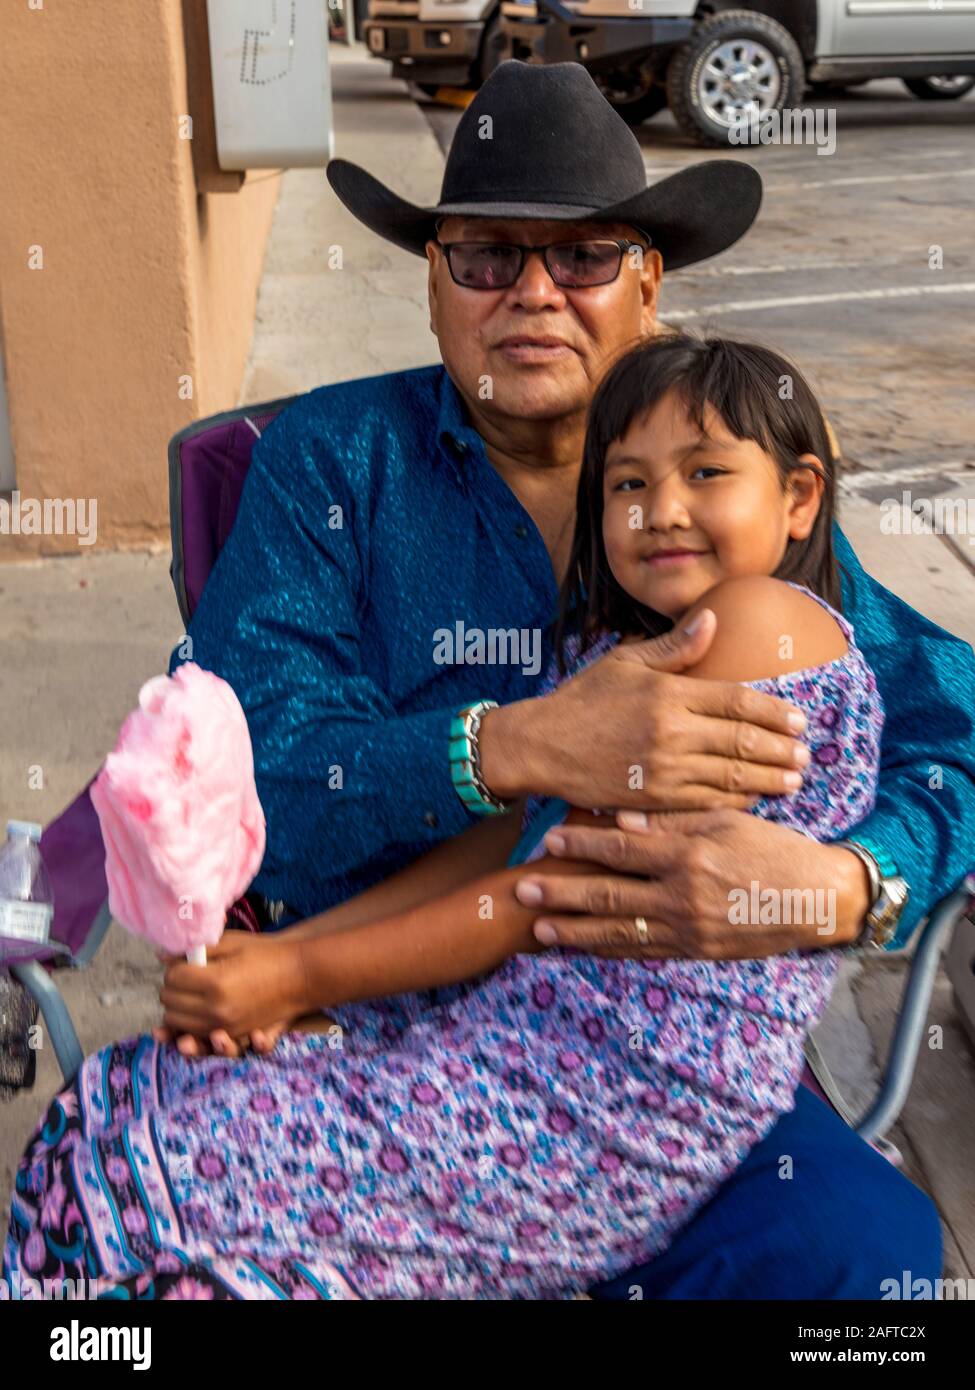 10 AOÛT 2019 - GALLUP NEW MEXICO, USA - Portraits d'homme et petite fille à Gallup 98e Inter-tribal Indian Ceremonial, Nouveau Mexique Banque D'Images